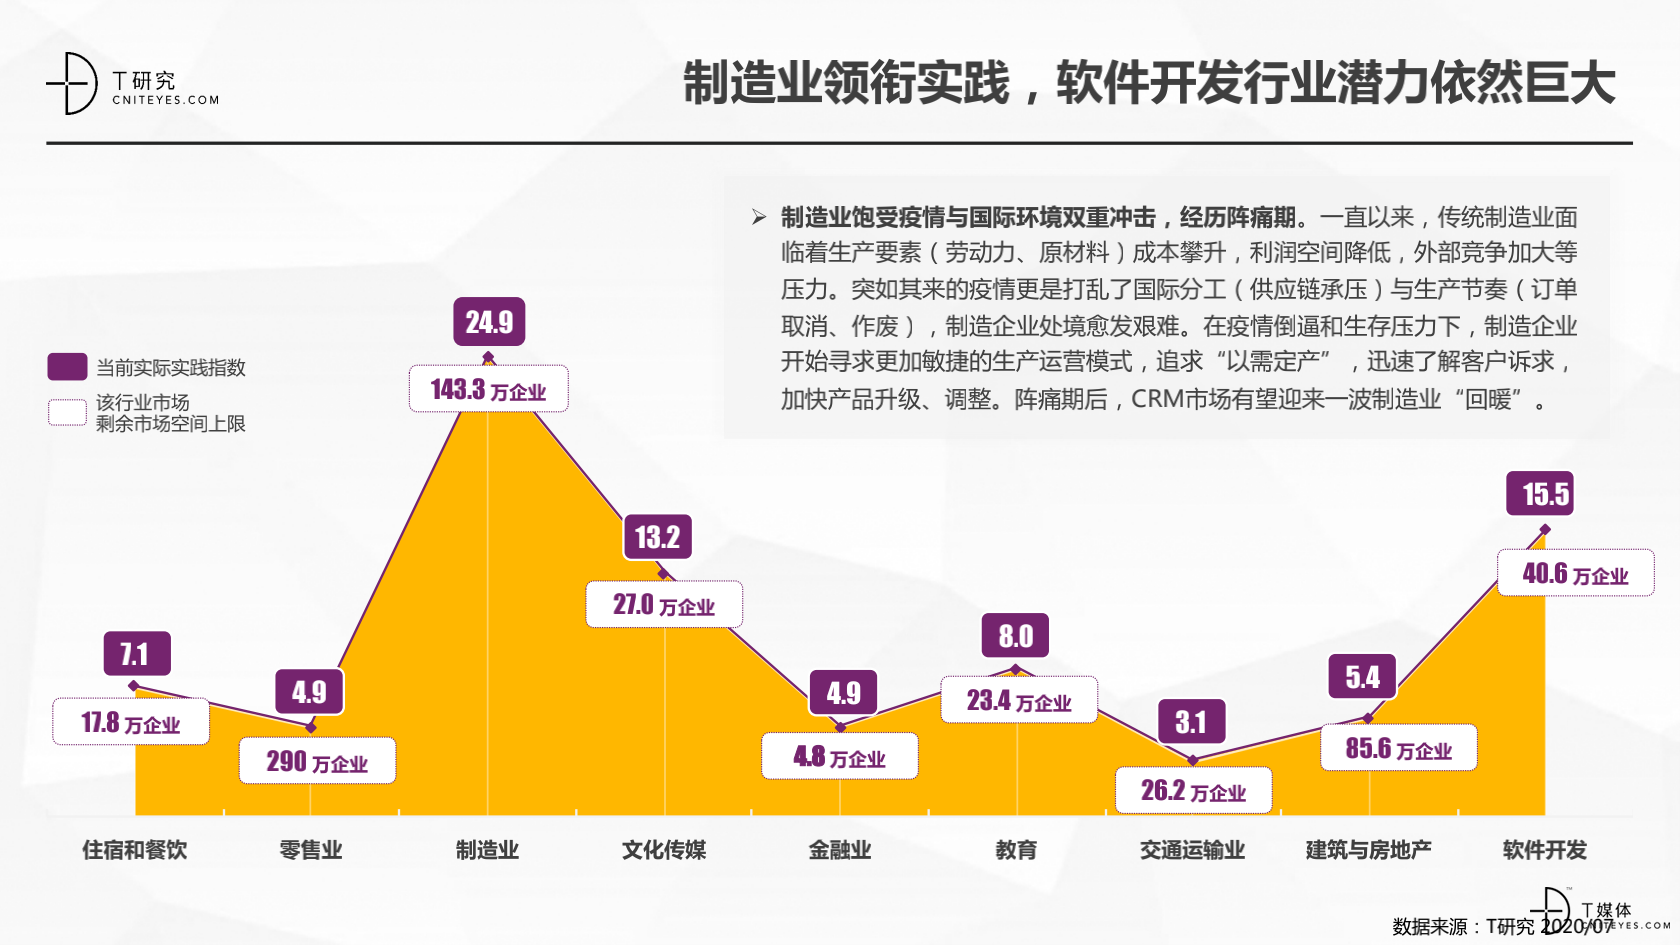 2_2020中国CRM指数测评报告v1.5_14.png